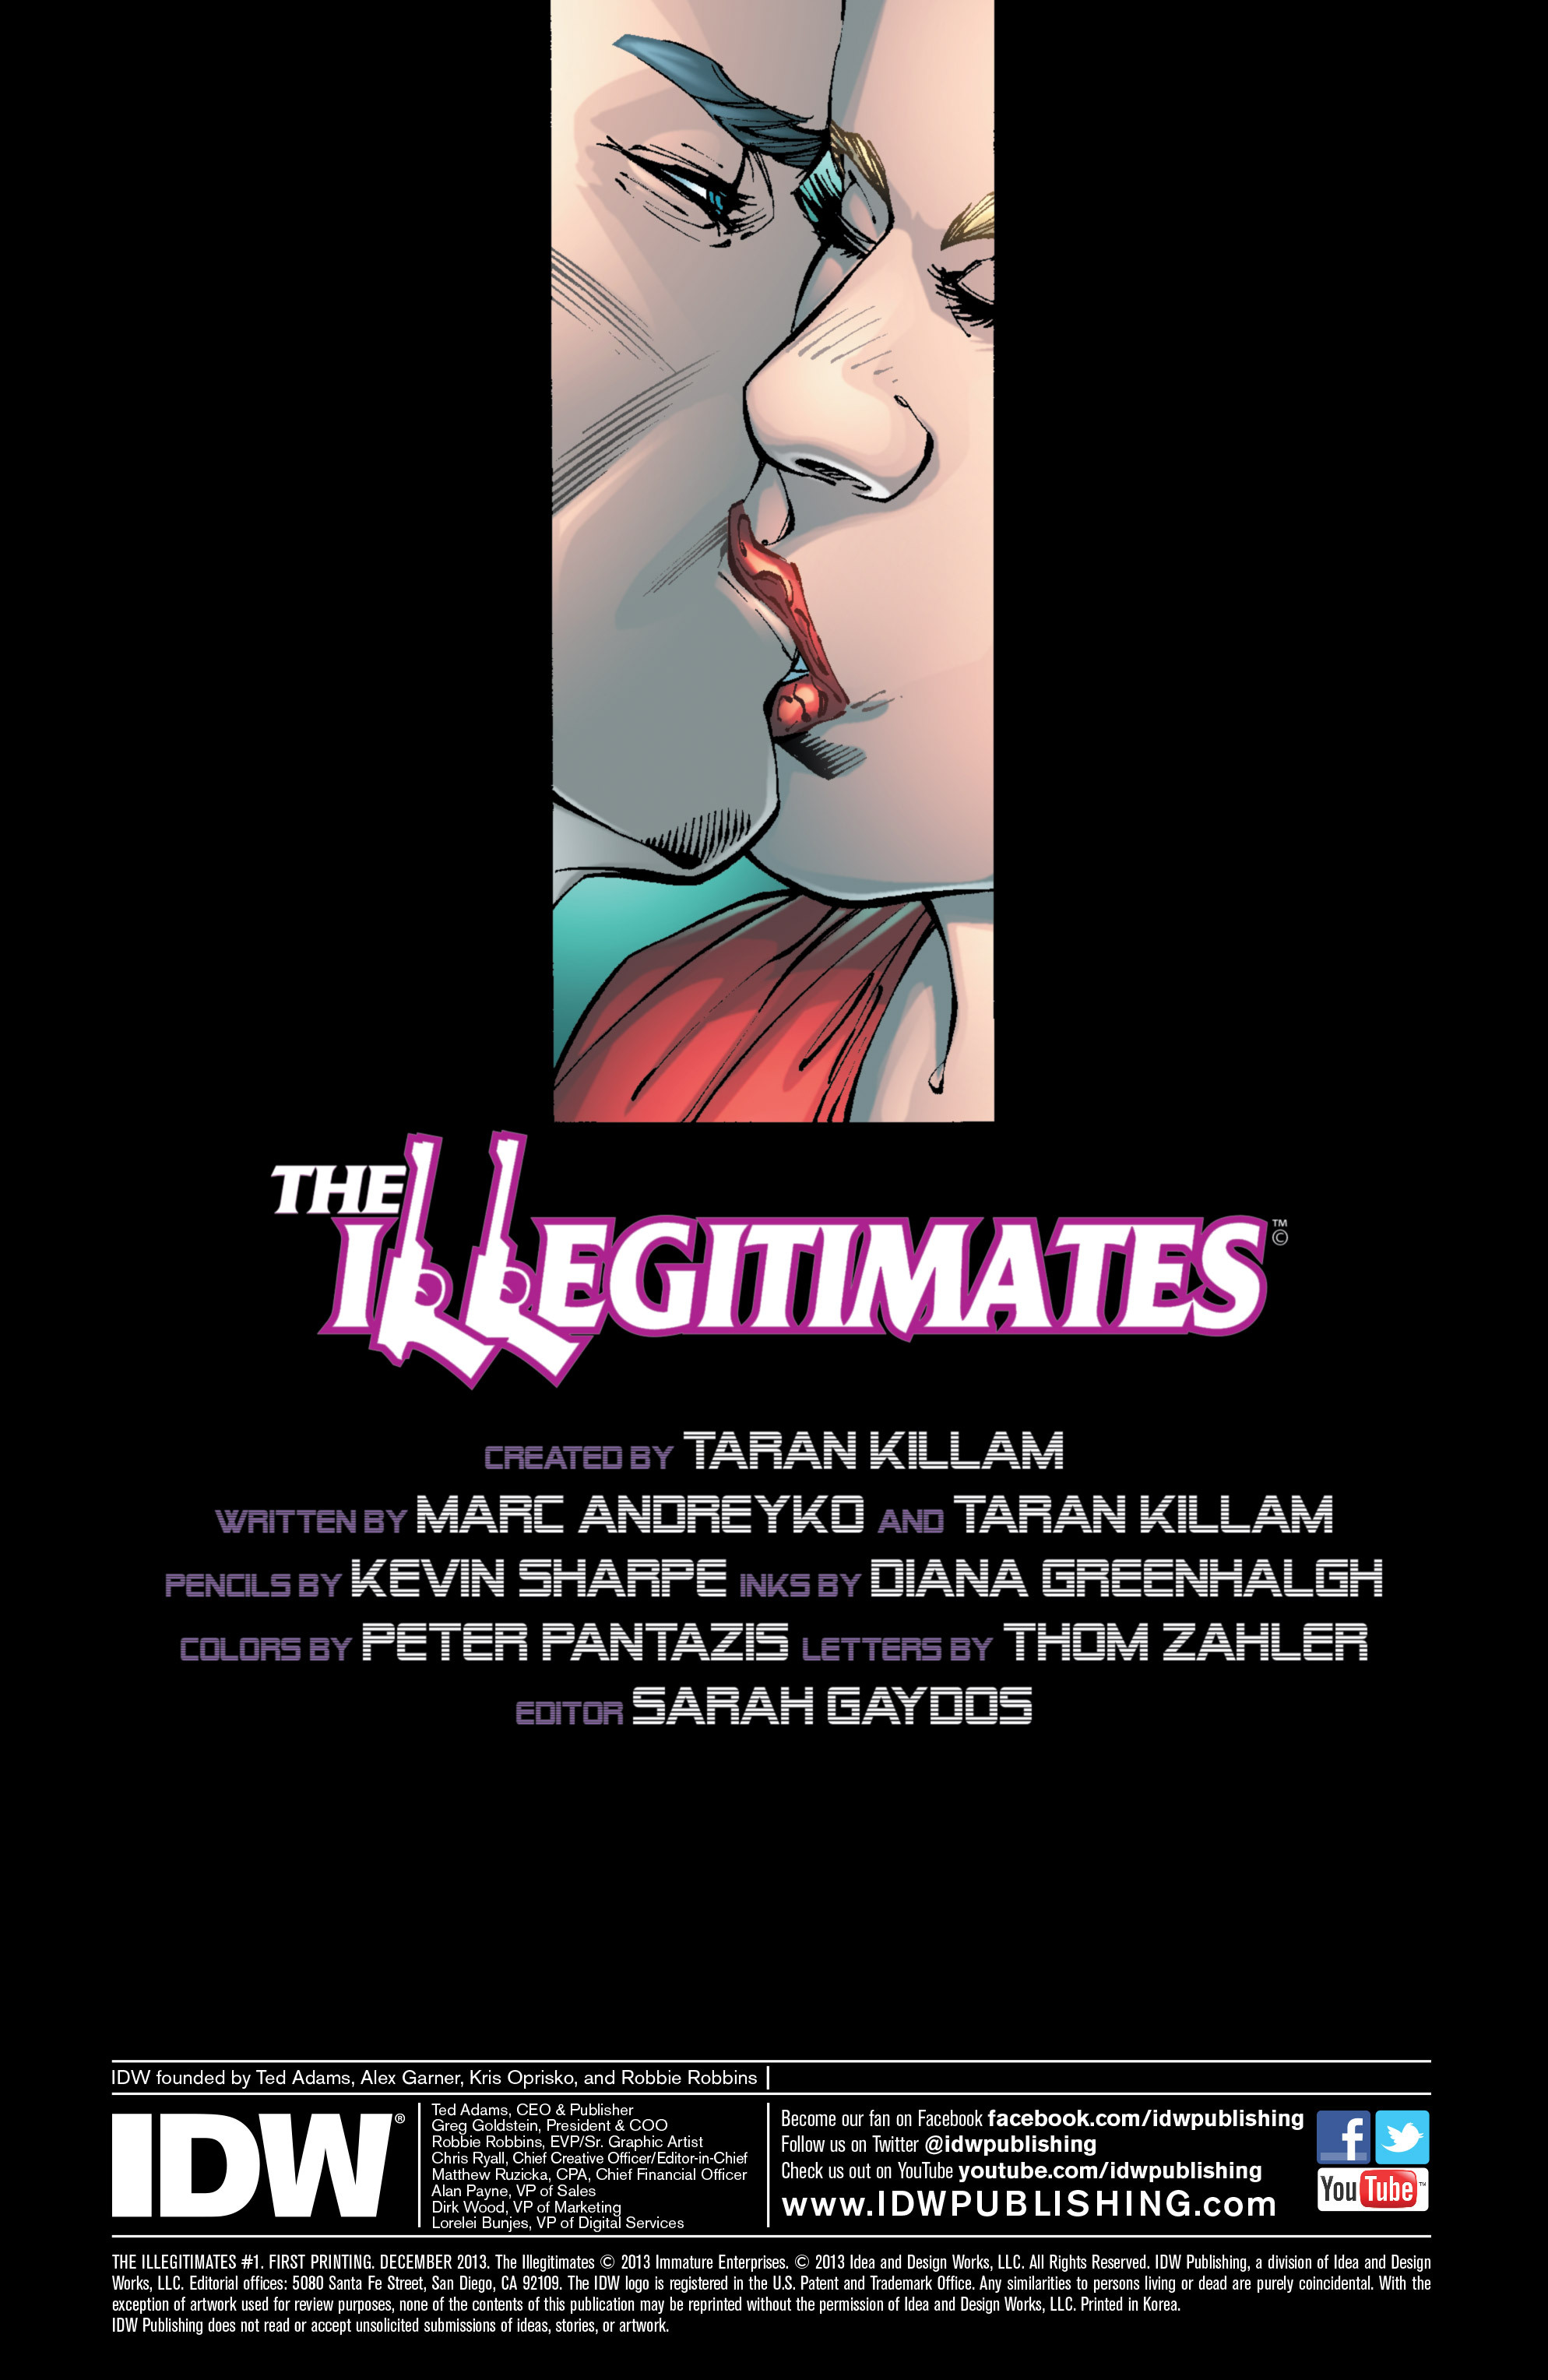 Read online The Illegitimates comic -  Issue #1 - 2